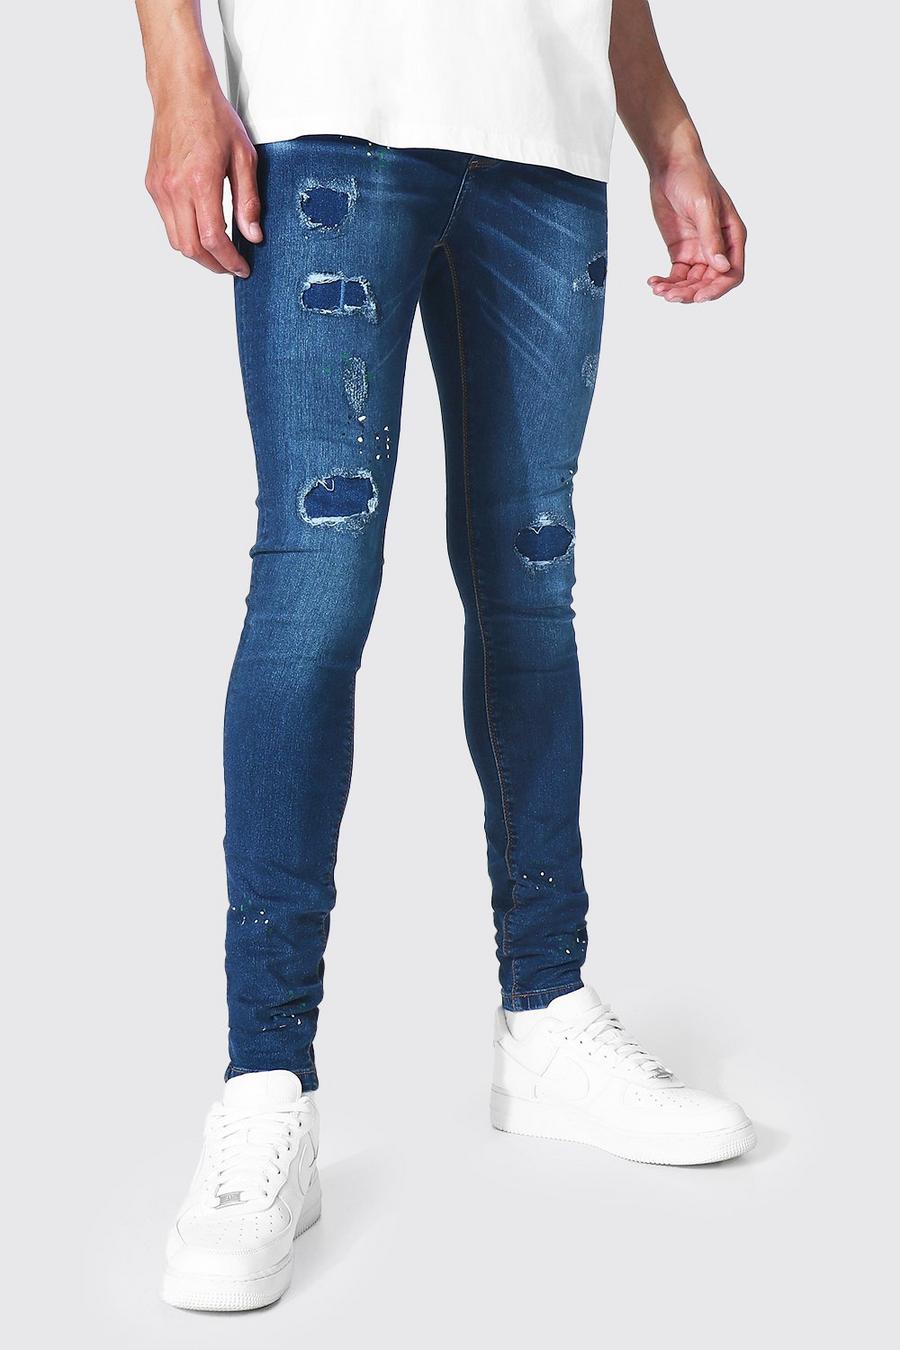 כחול כהה סופר סקיני ג'ינס עם כתמי צבע לגברים גבוהים image number 1